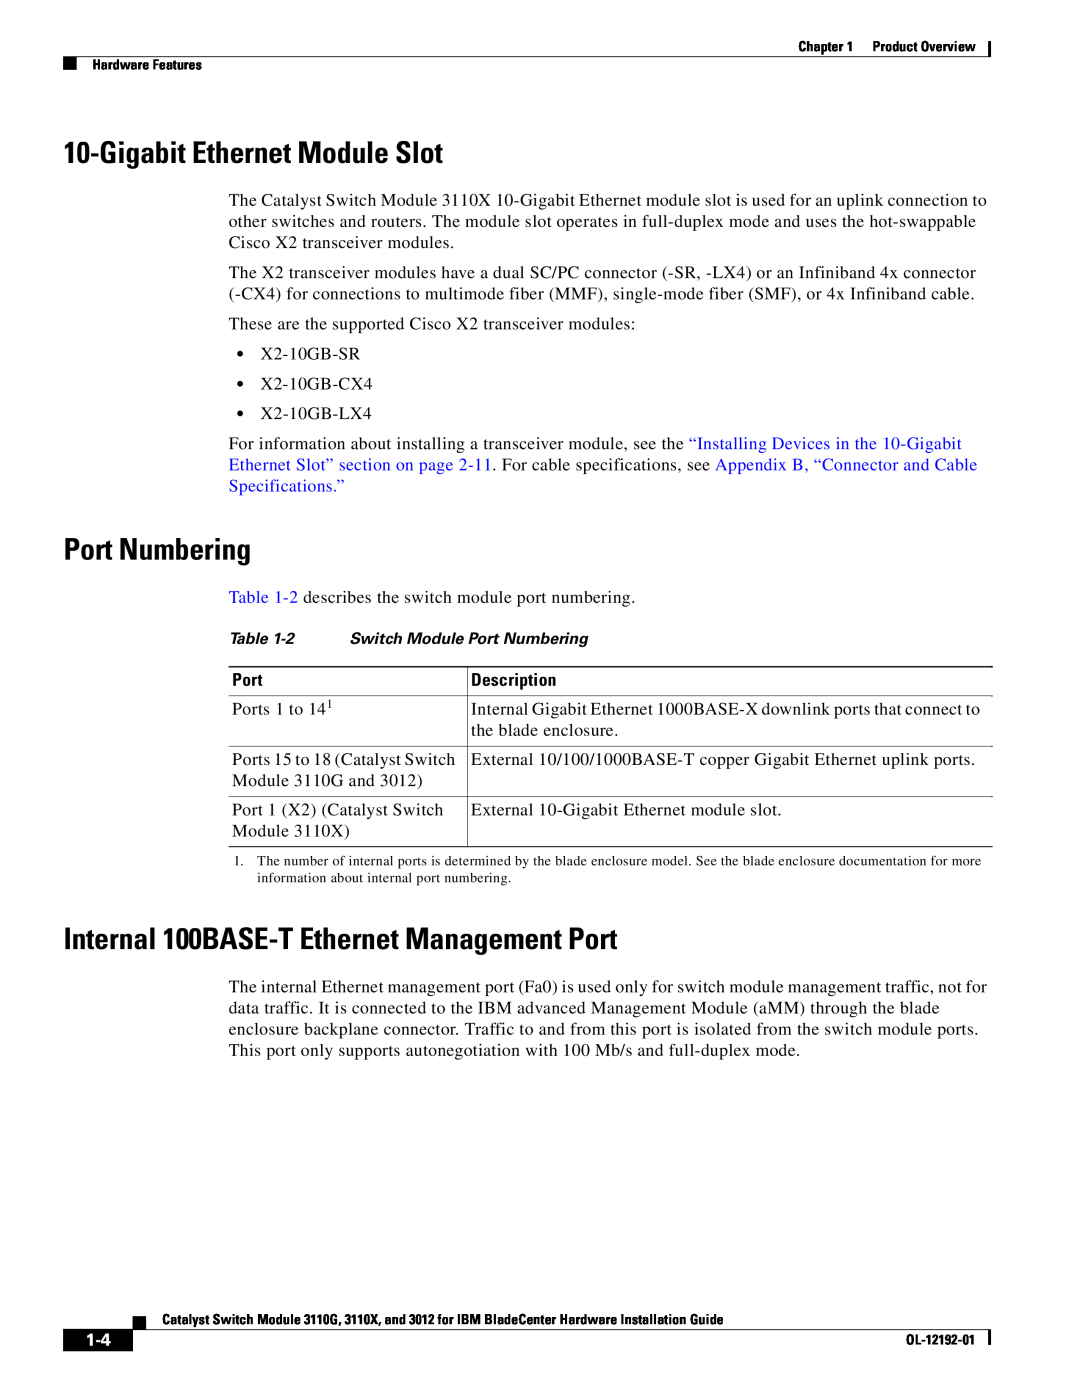 Cisco Systems 3110G Gigabit Ethernet Module Slot, Port Numbering, Internal 100BASE-T Ethernet Management Port, Description 